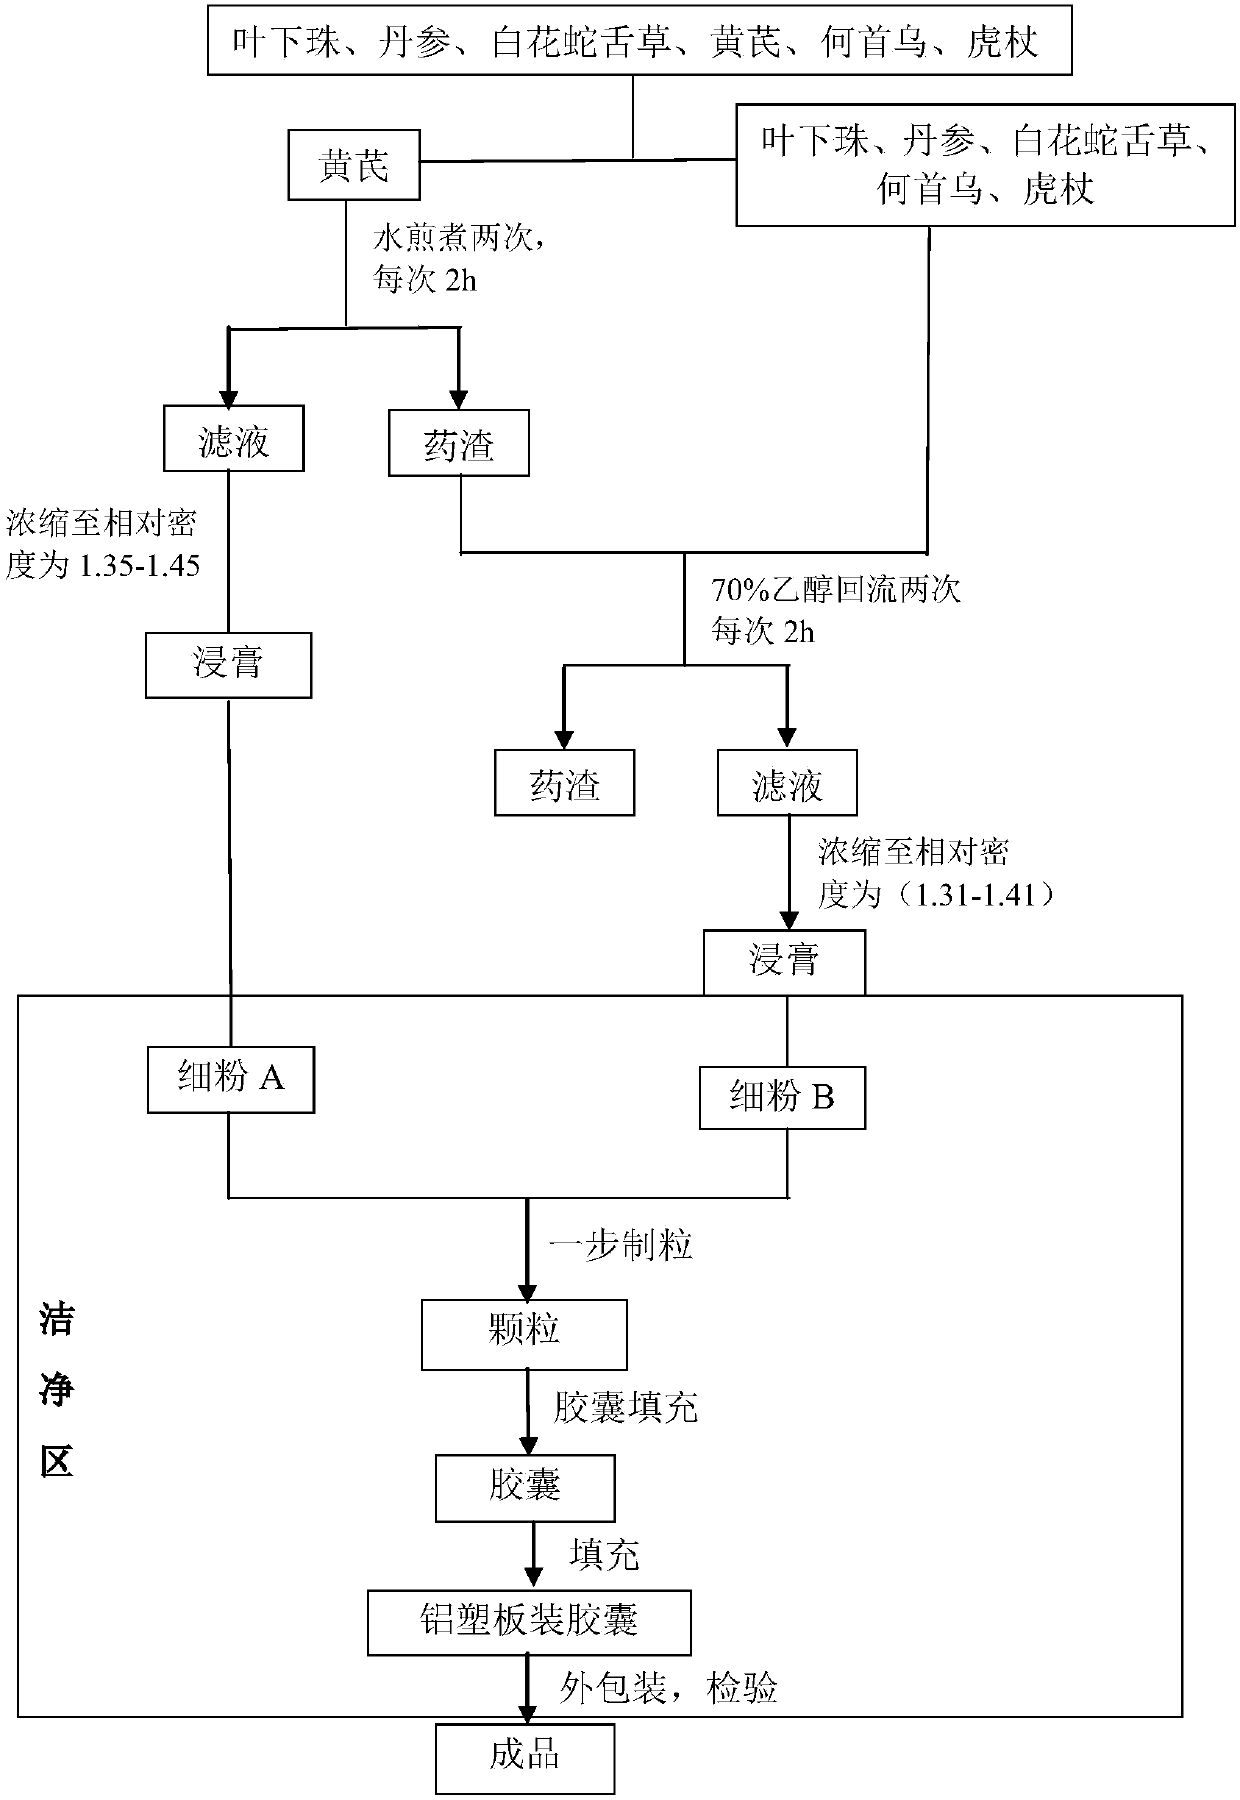 Method for preparing hepatitis B Shukang capsules